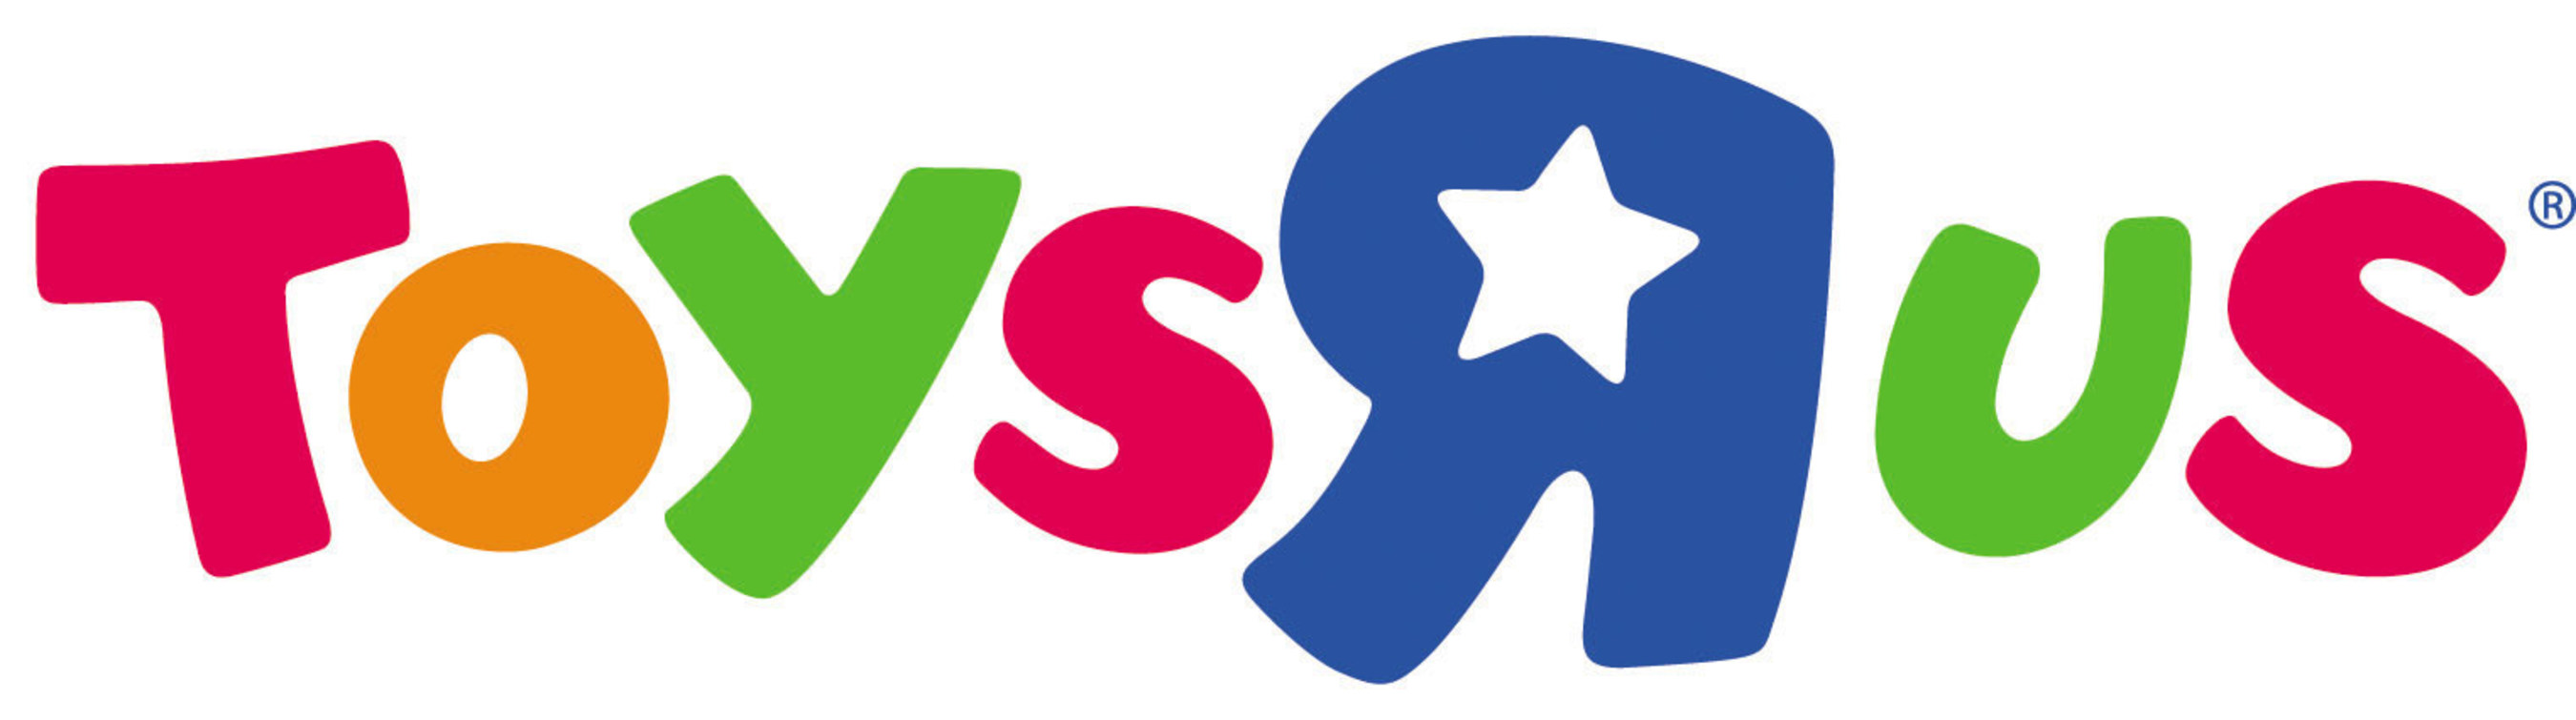 Afbeeldingsresultaat voor toys r us logo